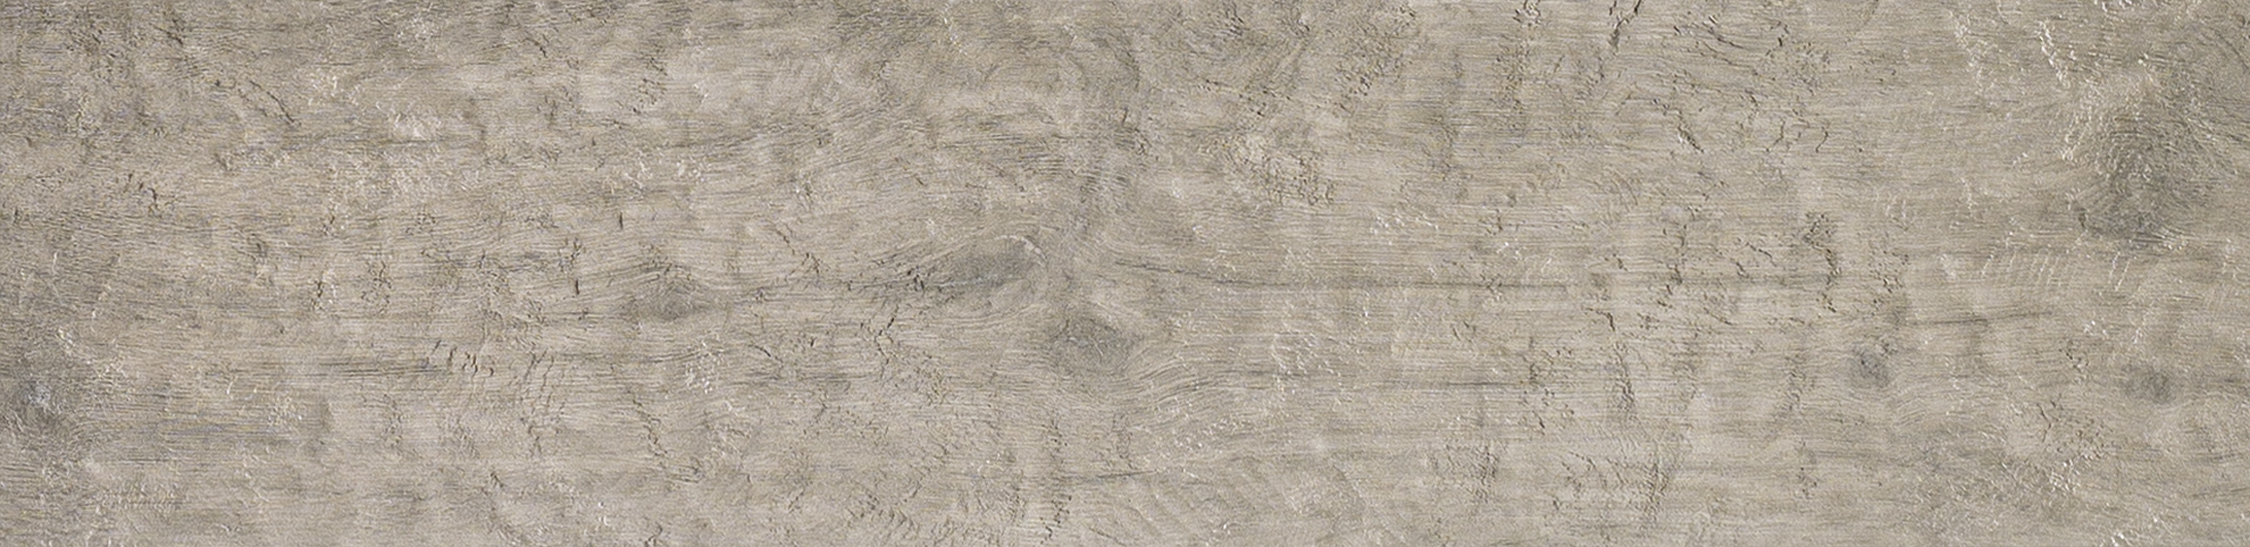 Керамогранит ИТАЛОН NL-Wood Аш Грип 22,5*90  (6шт-1,215 м.кв)